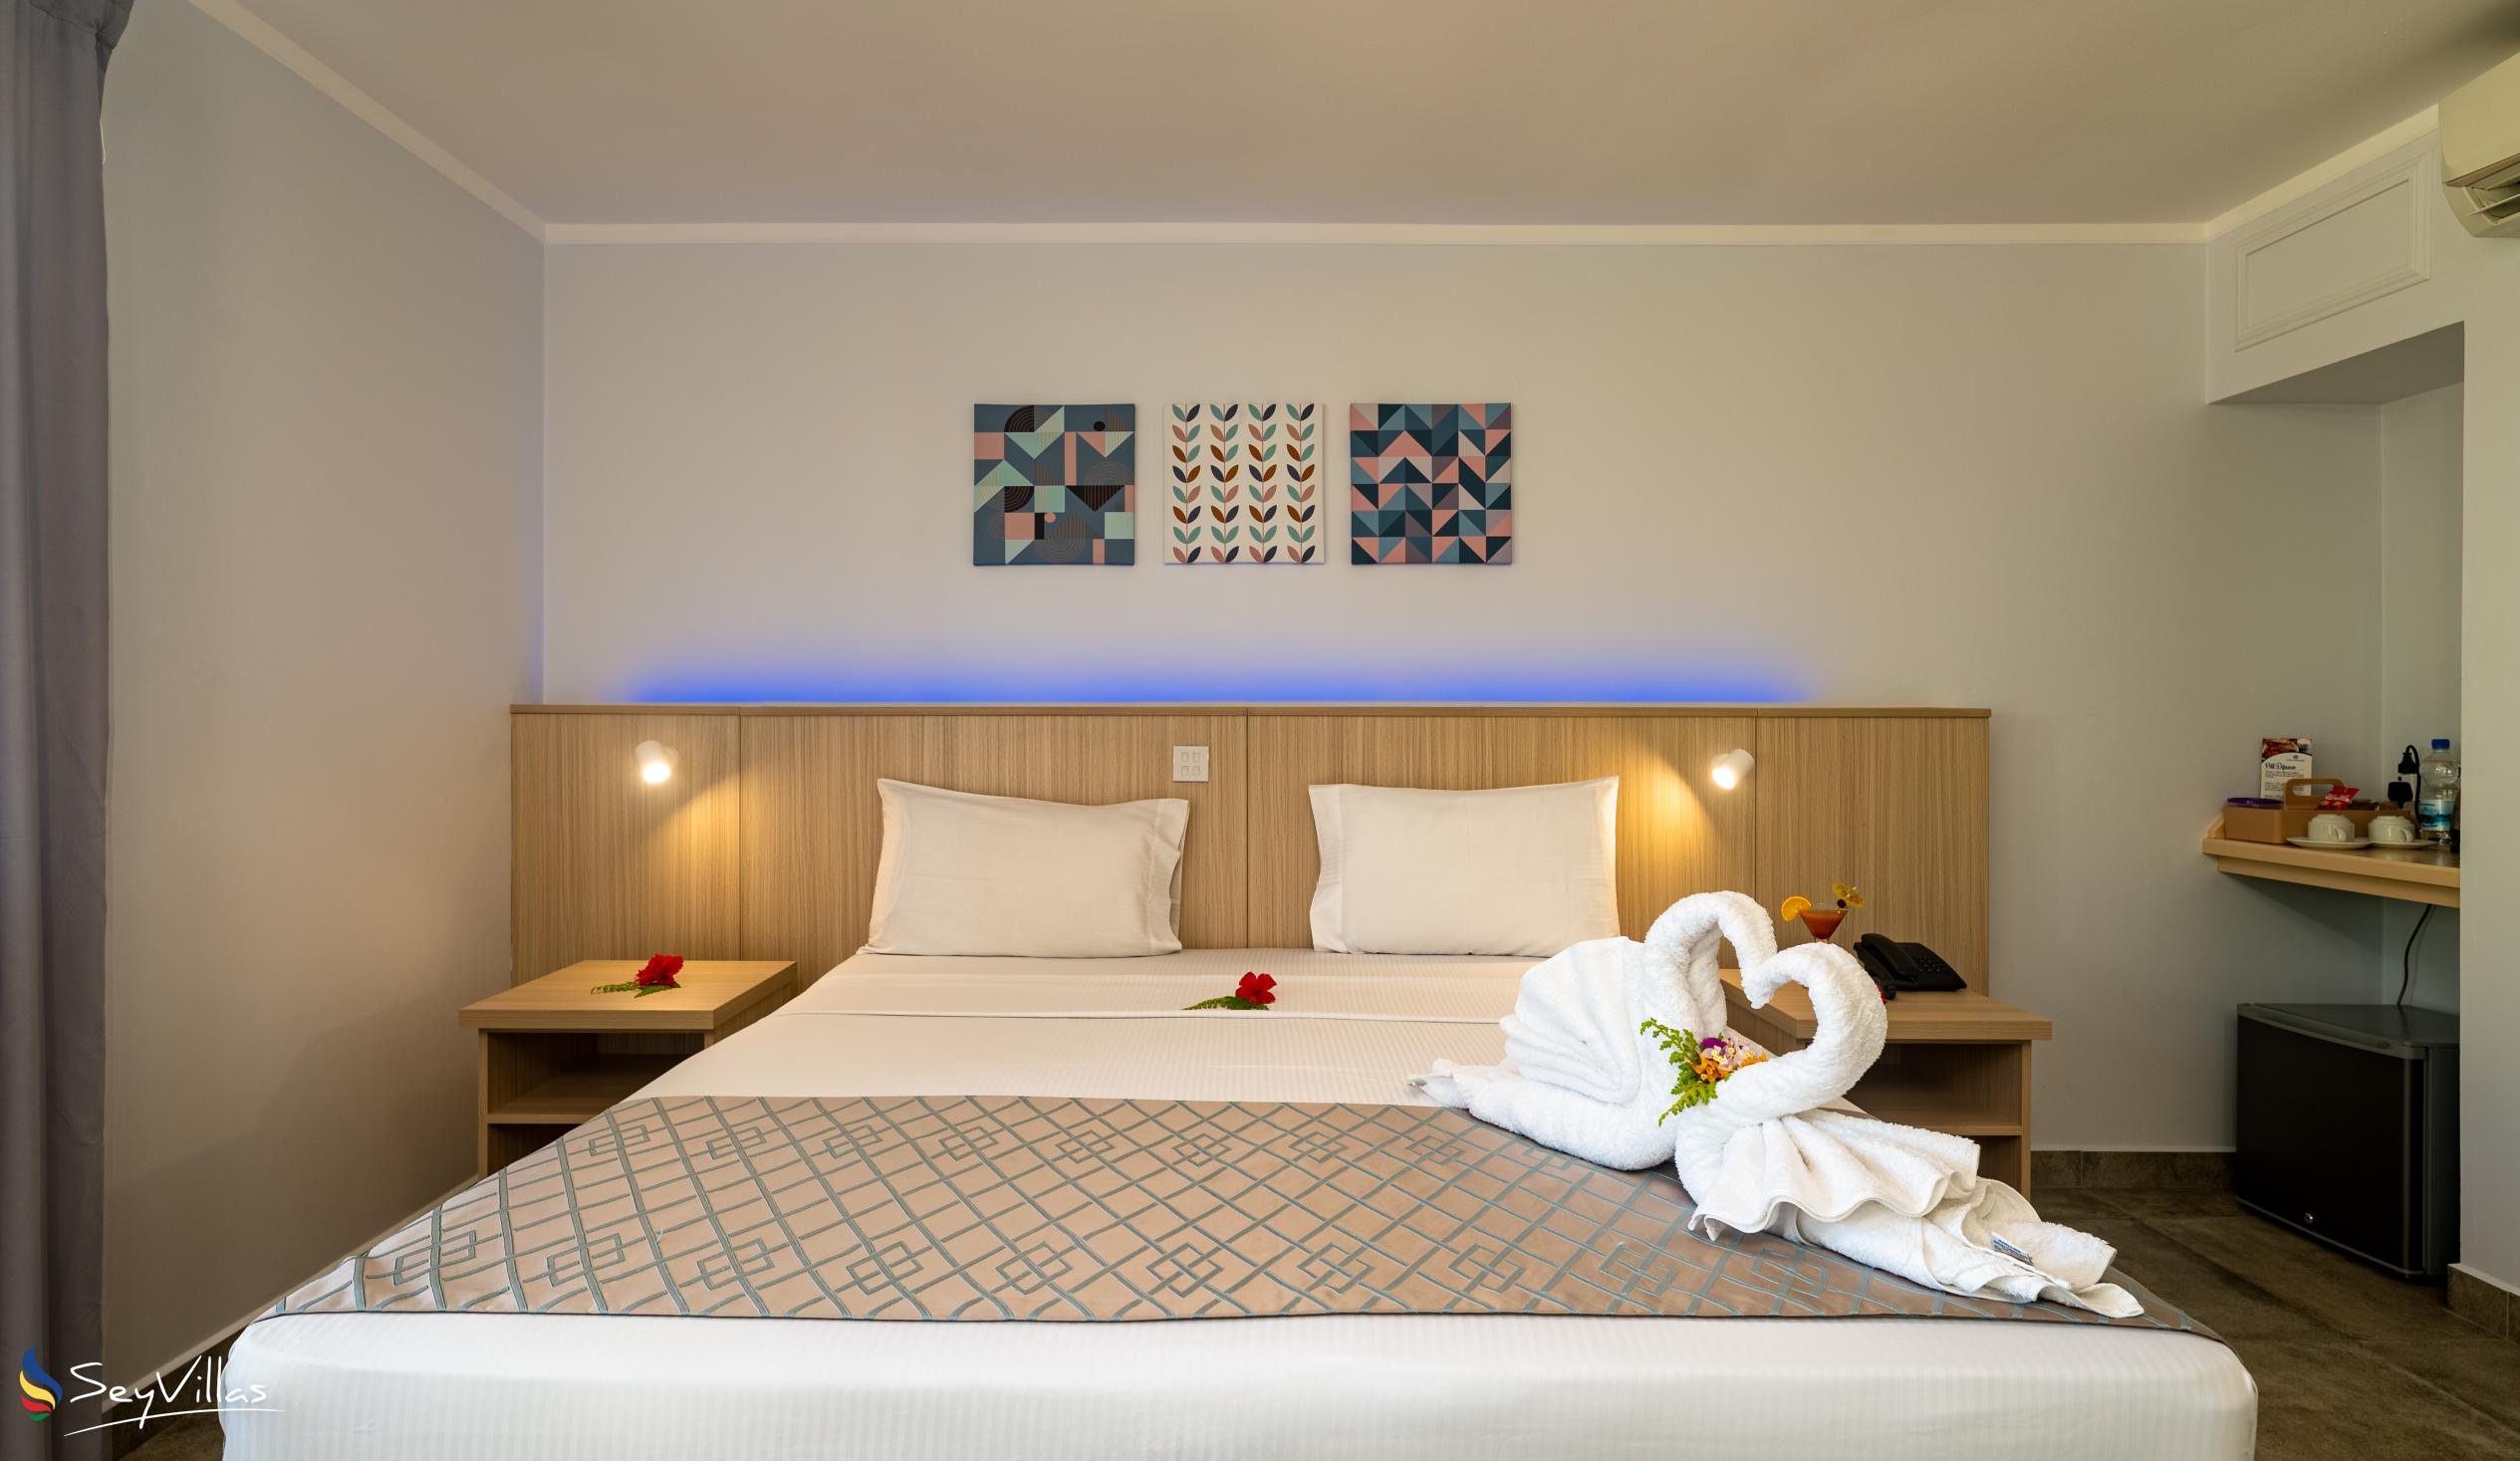 Photo 72: Hotel La Roussette - Superior Room - Mahé (Seychelles)